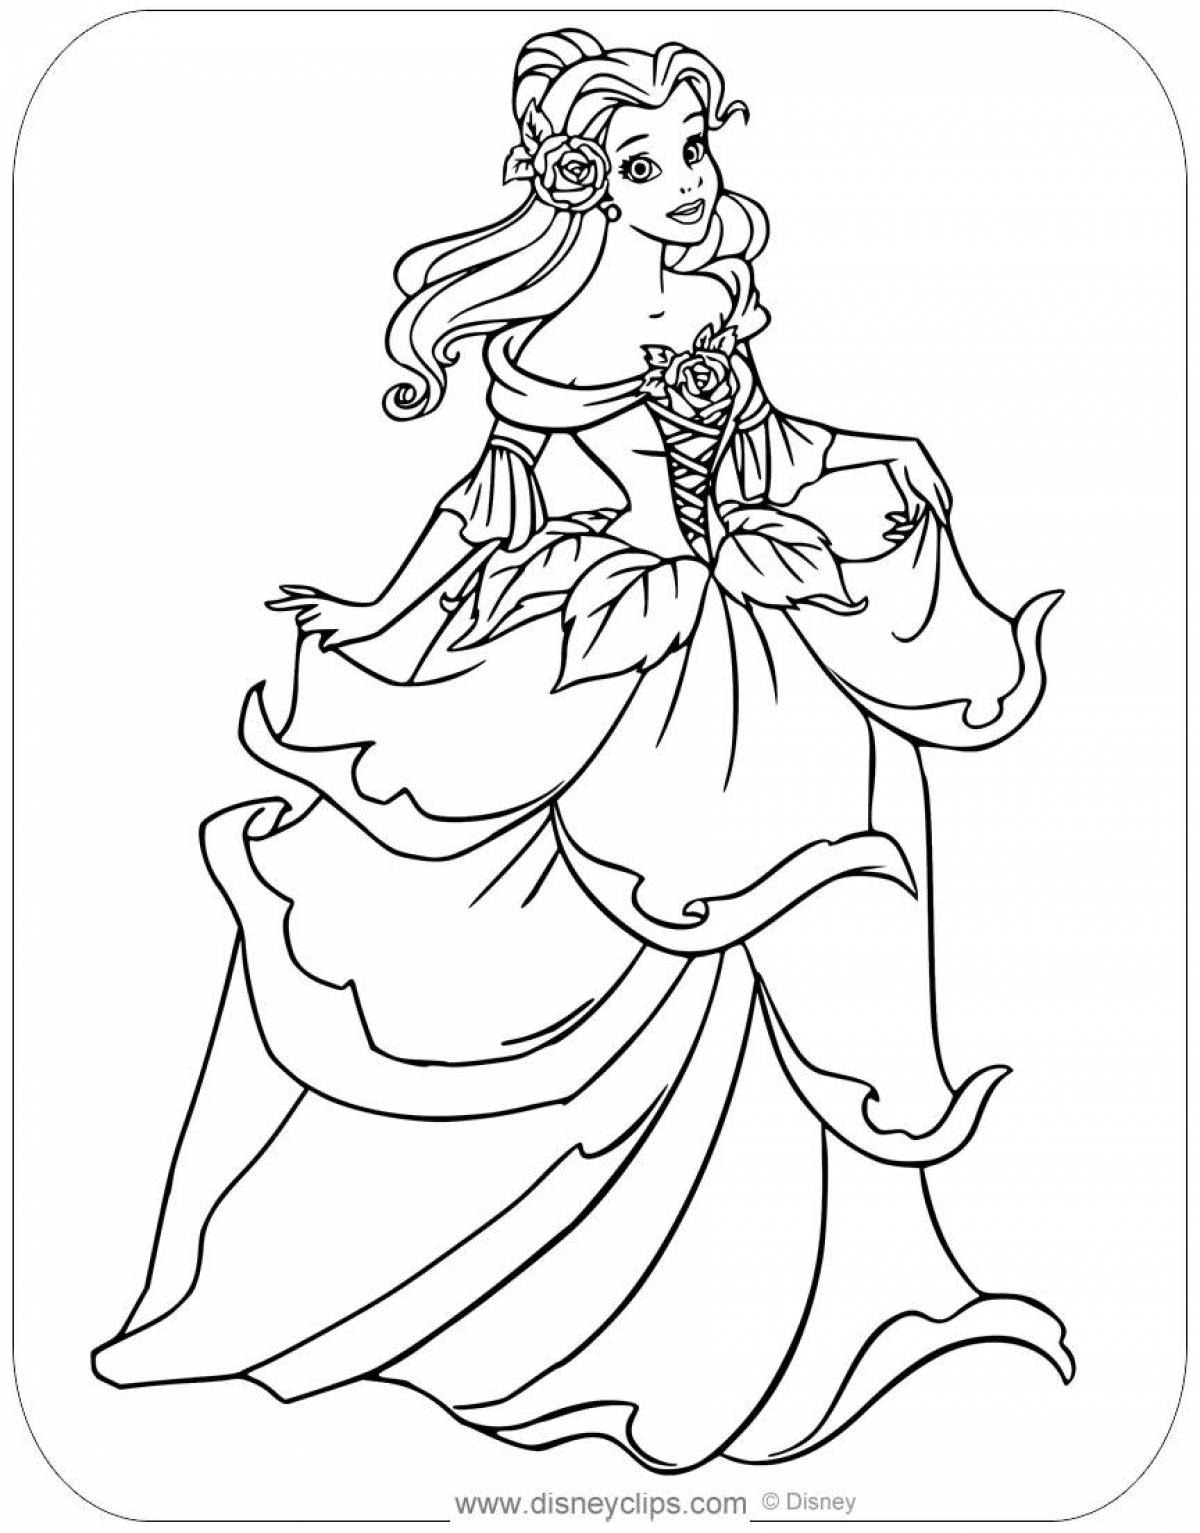 Fun coloring book of Disney princesses in beautiful dresses